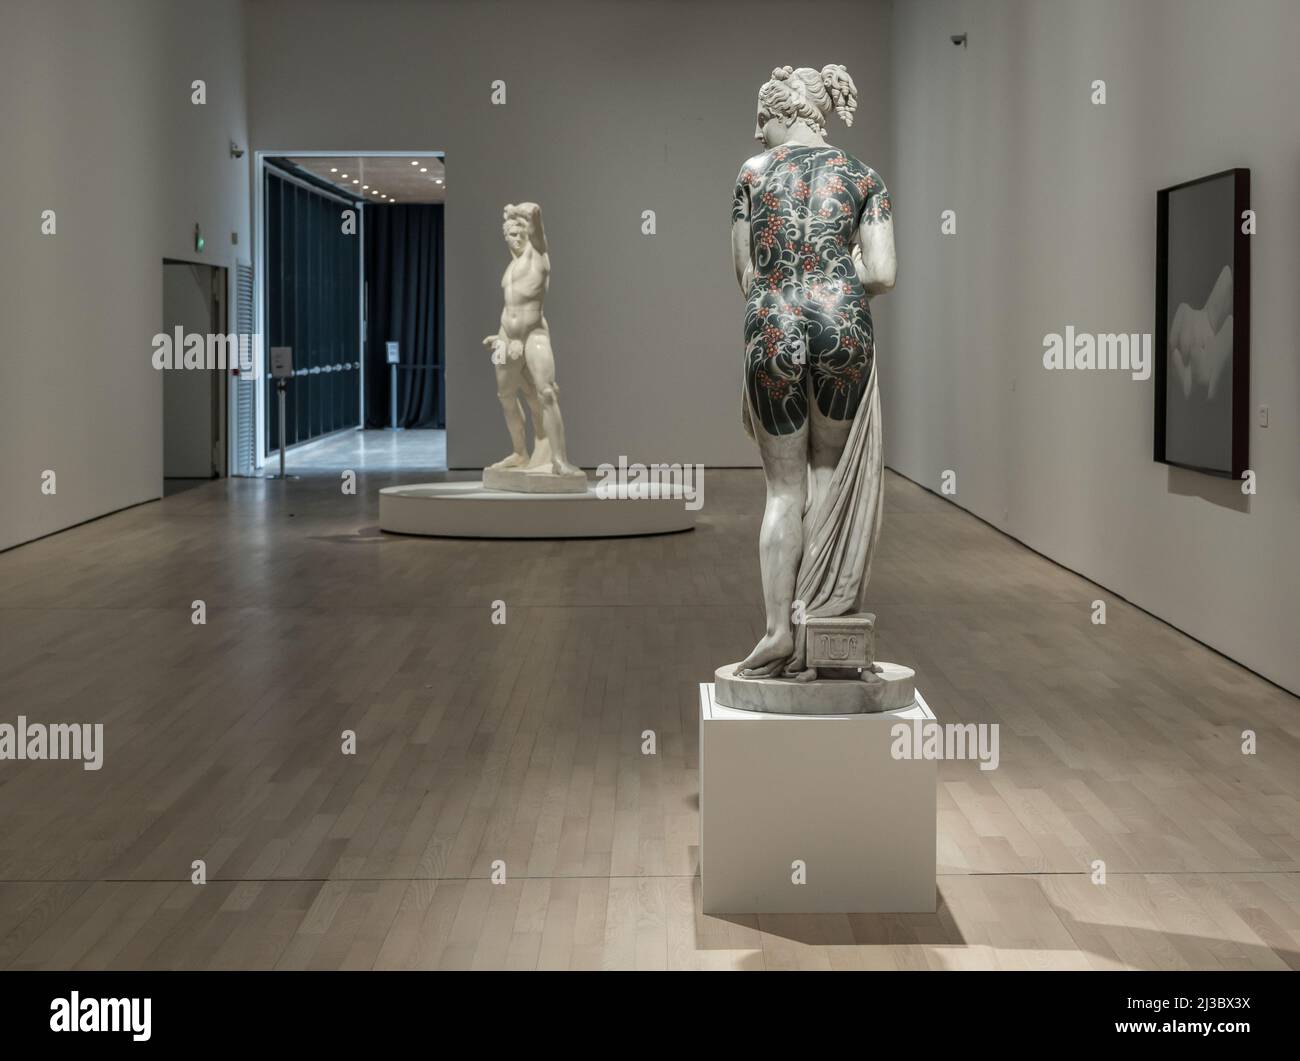 Tätowierte Marmorskulptur - Italic Venus - von Fabio Viale Sculptor ausgestellt in den Räumen des Museums für Zeitgenössische Kunst - Rovereto, Italien Stockfoto